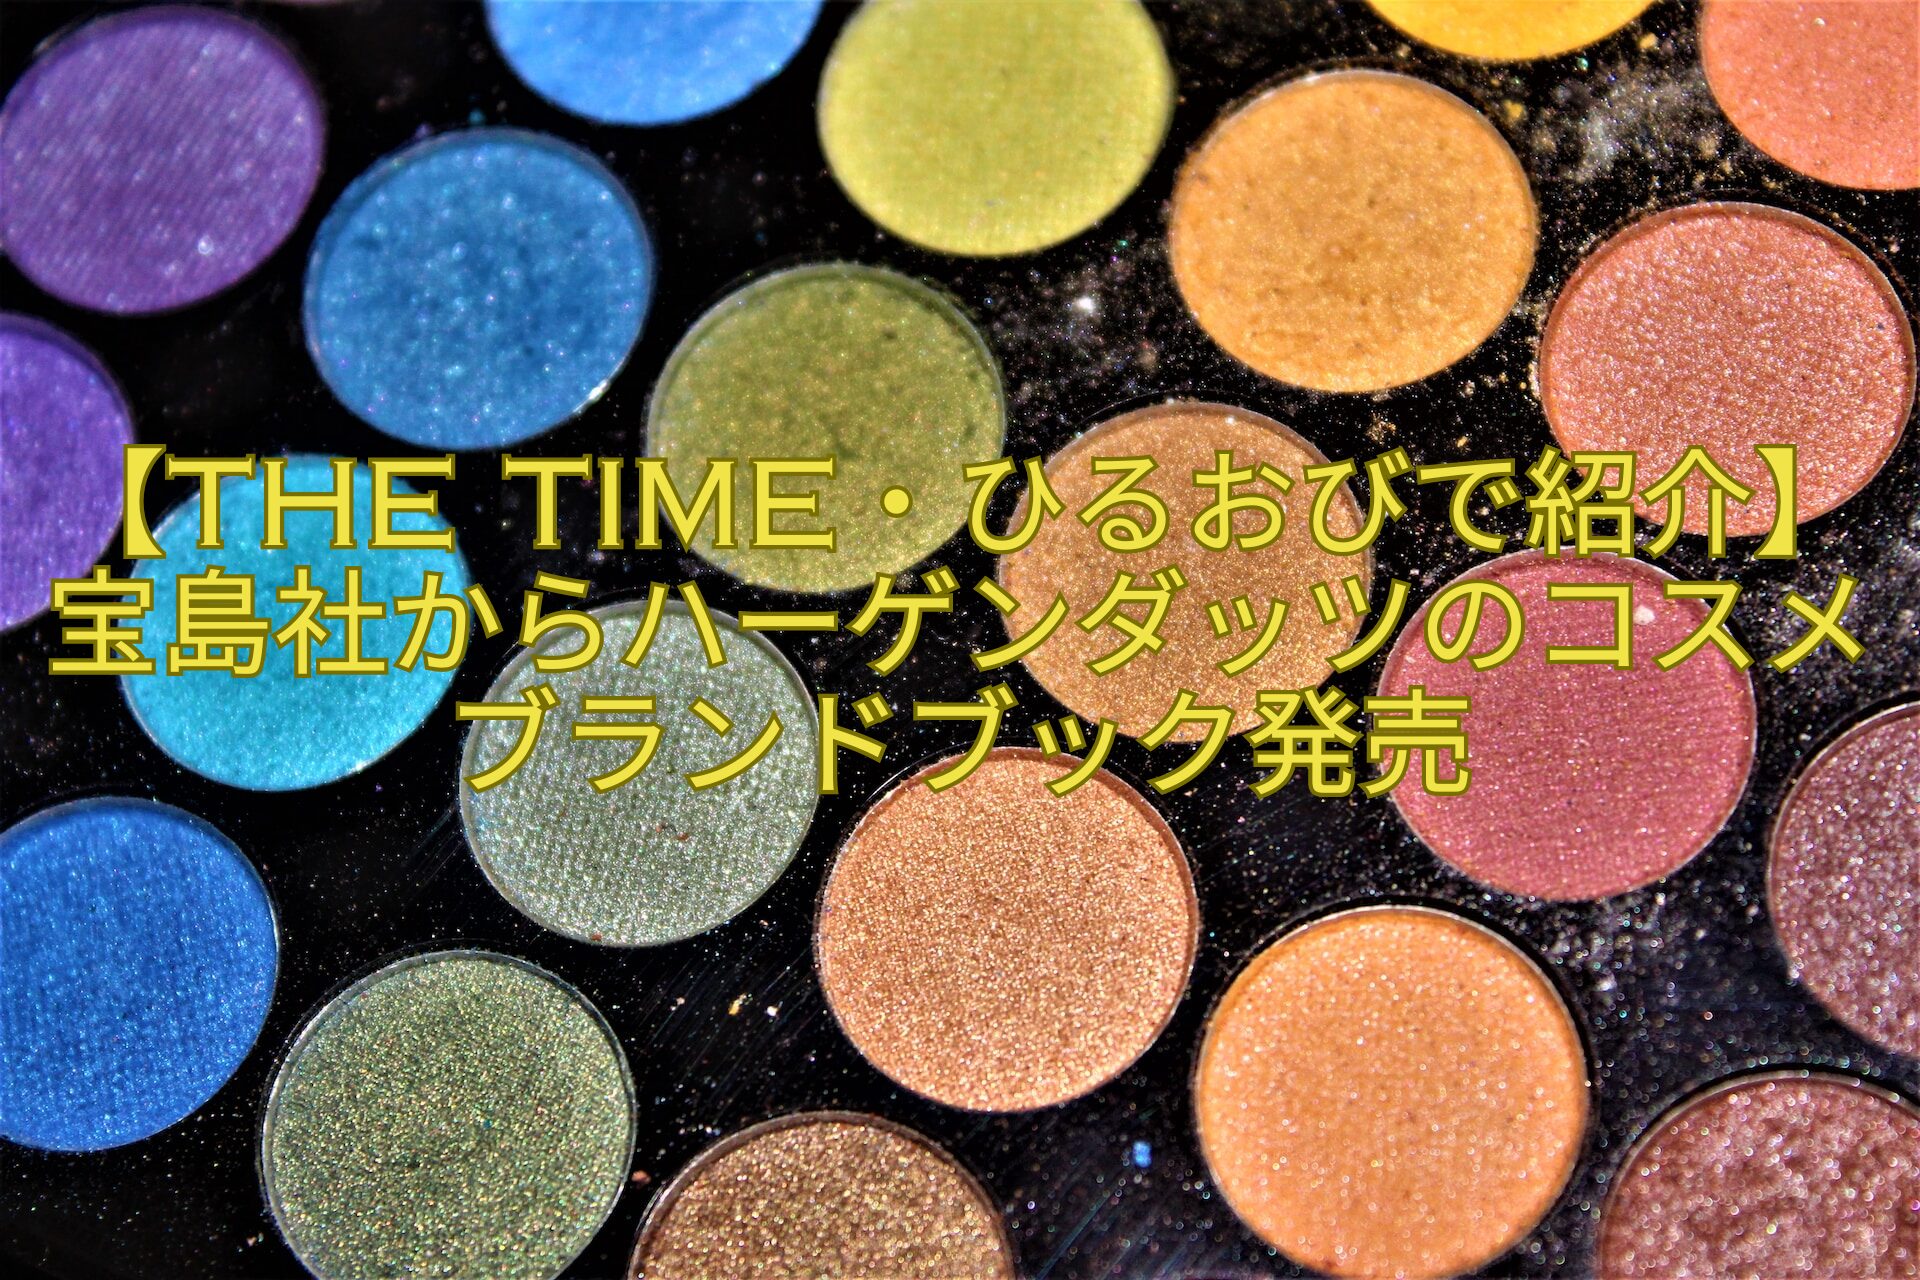 【THE-TIME・ひるおびで紹介】宝島社からハーゲンダッツのコスメブランドブック発売